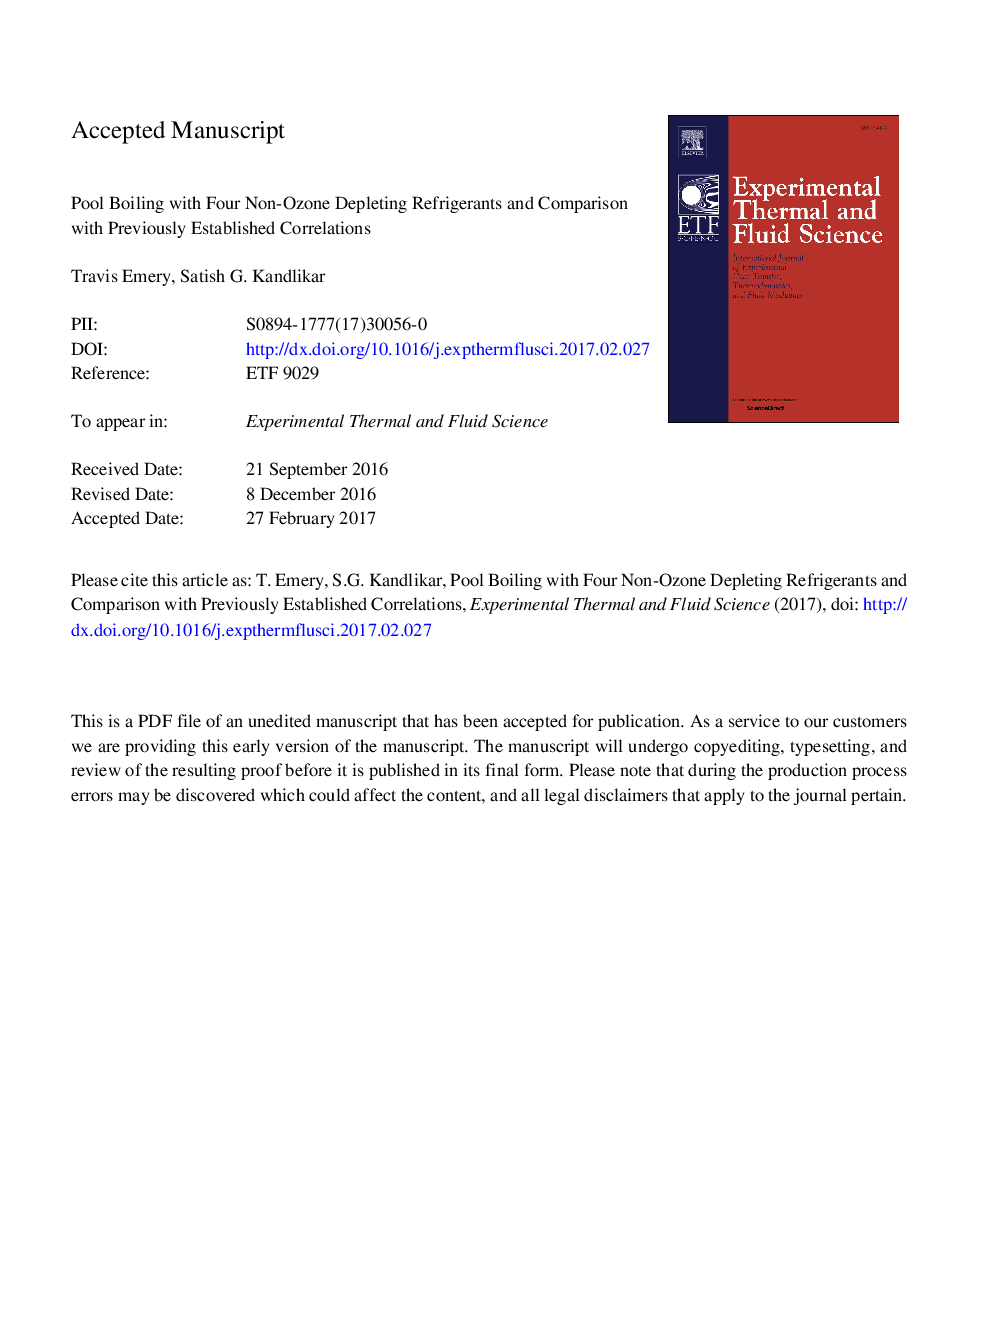 جوشاندن استخر با چهار فرآیند تخلیه غیر اوزون و مقایسه آن با همبستگی هایی که قبلا ایجاد شده است 